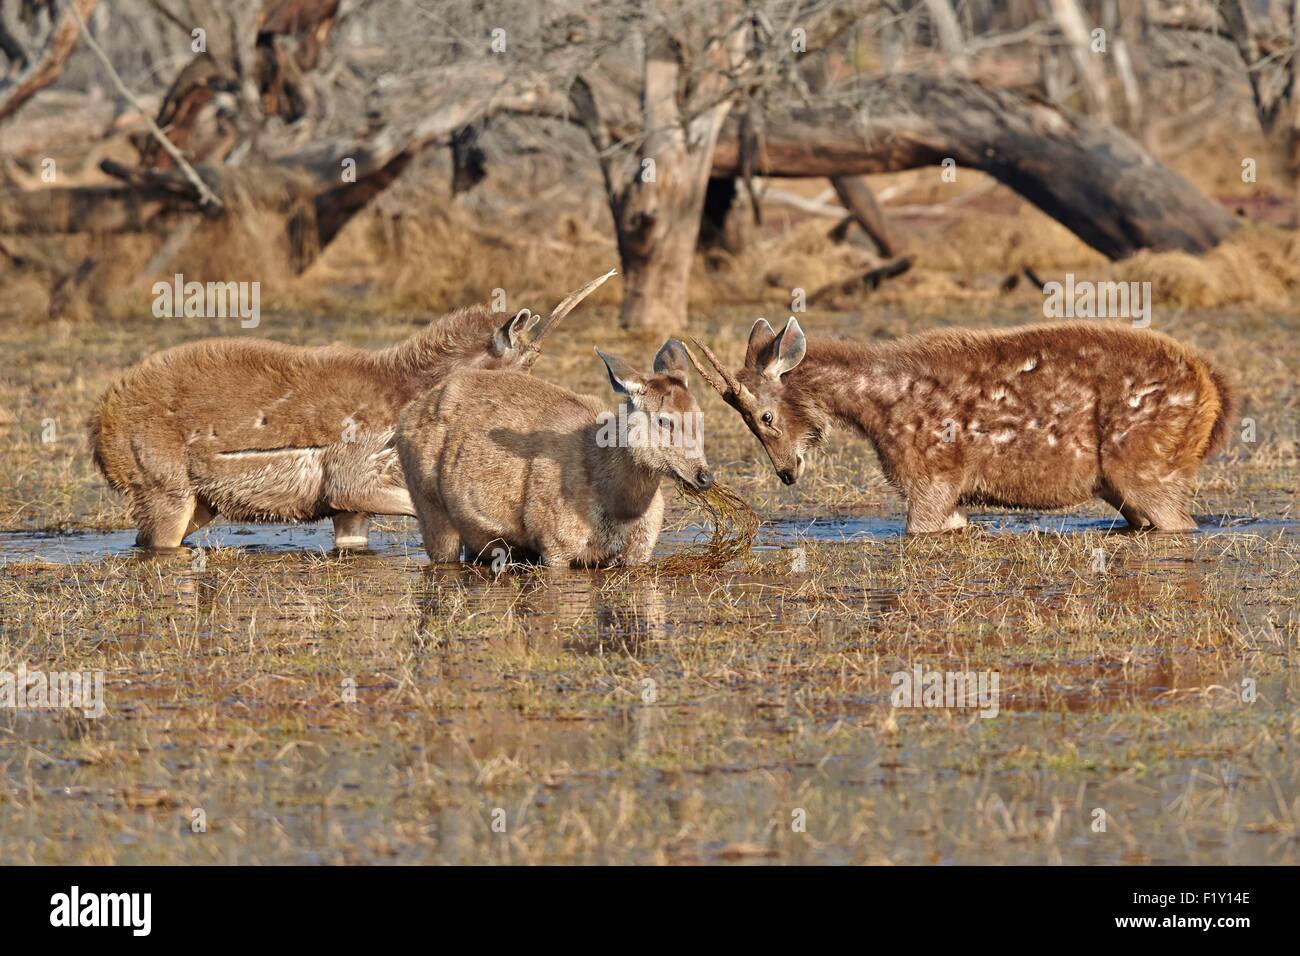 L'Inde, Rajasthan, le parc national de Ranthambore, cerf Sambar (Rusa unicolor), il se nourrit de plantes aquatiques dans un marsch, 2 jeunes mâles se battent Banque D'Images